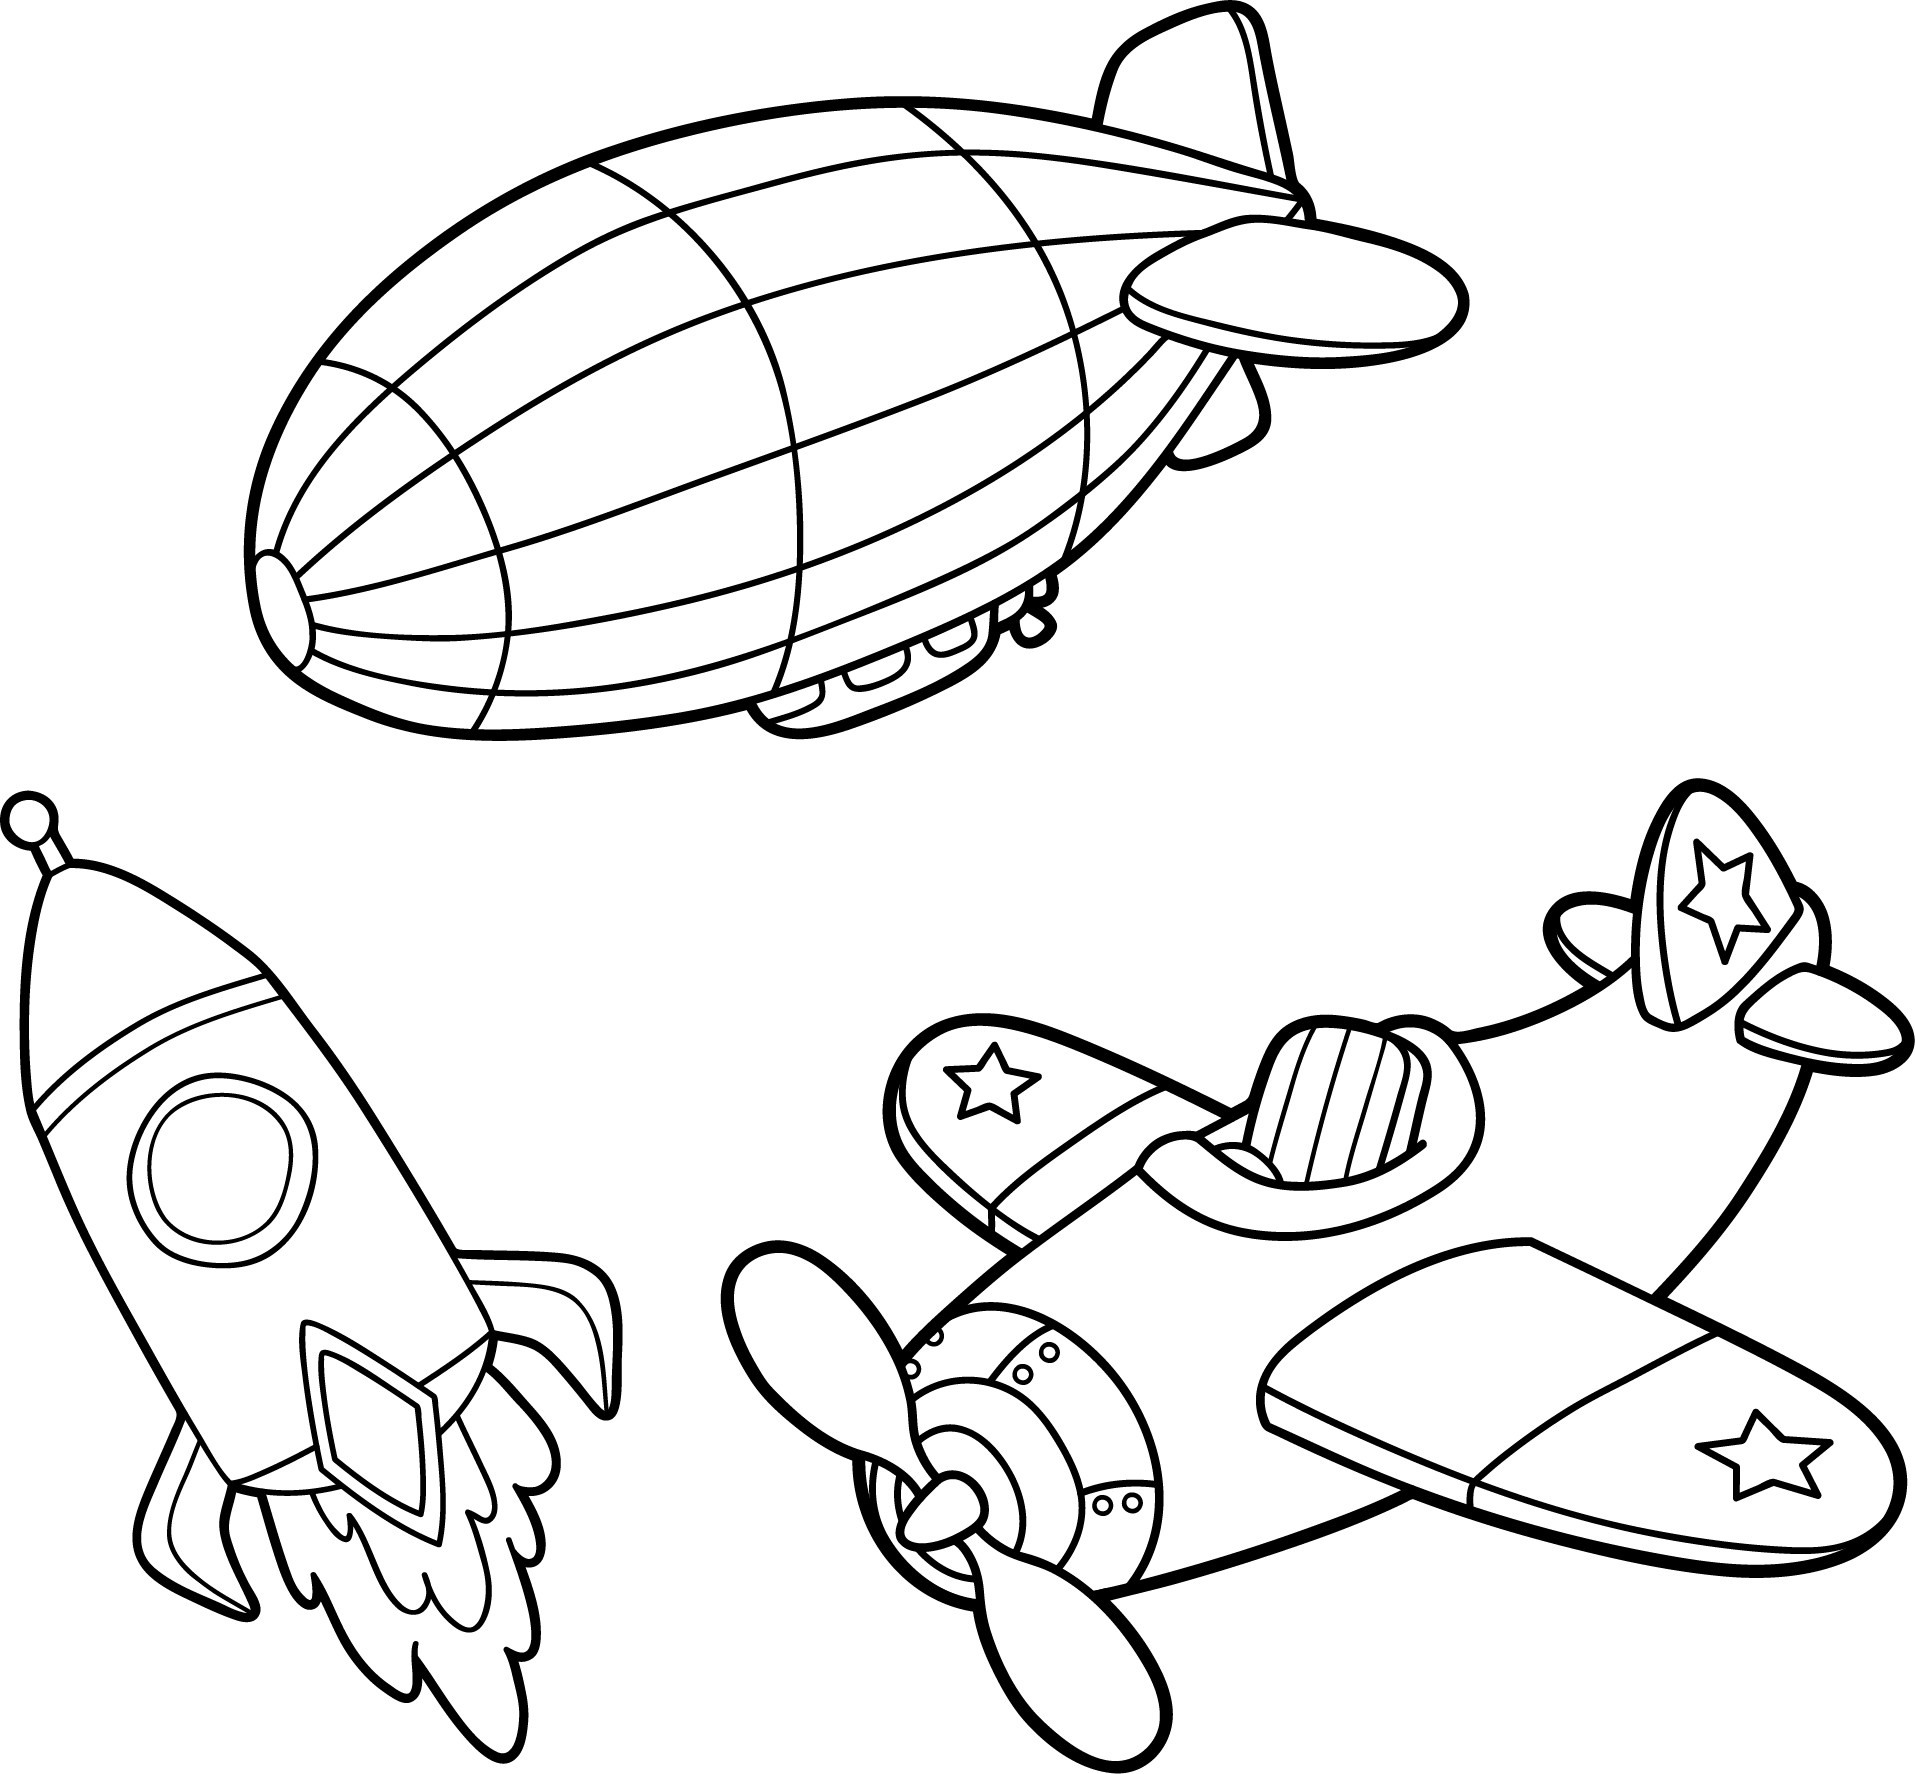 Раскраска для детей: игрушки: космическая ракета, самолет, дирижабль